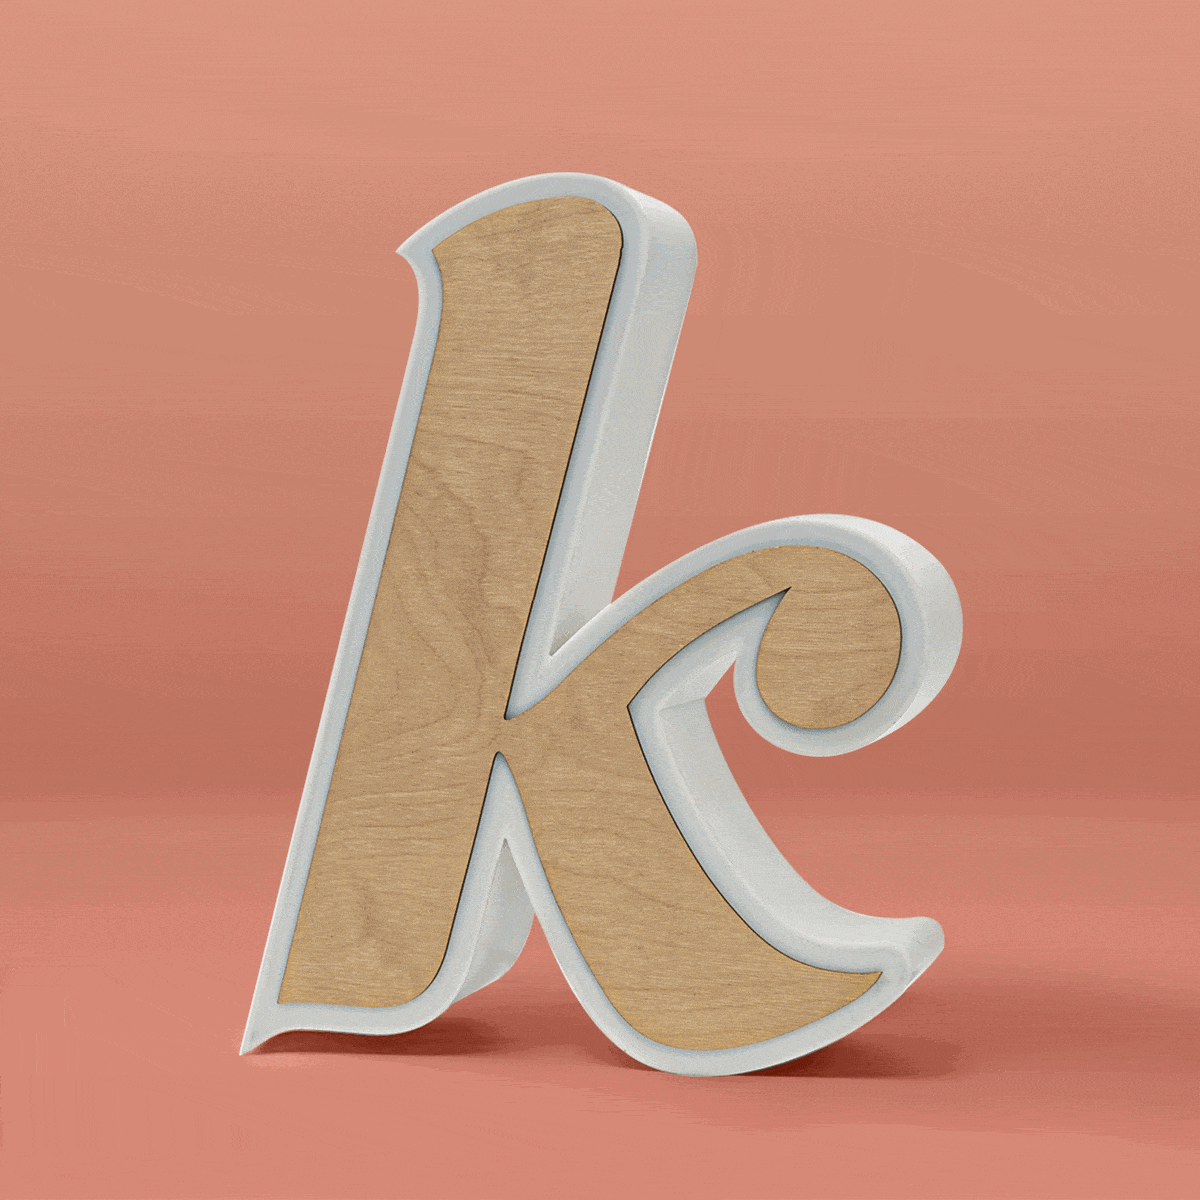 Lettera k - splendente lungo il contorno e lateralmente, sono possibili due varianti